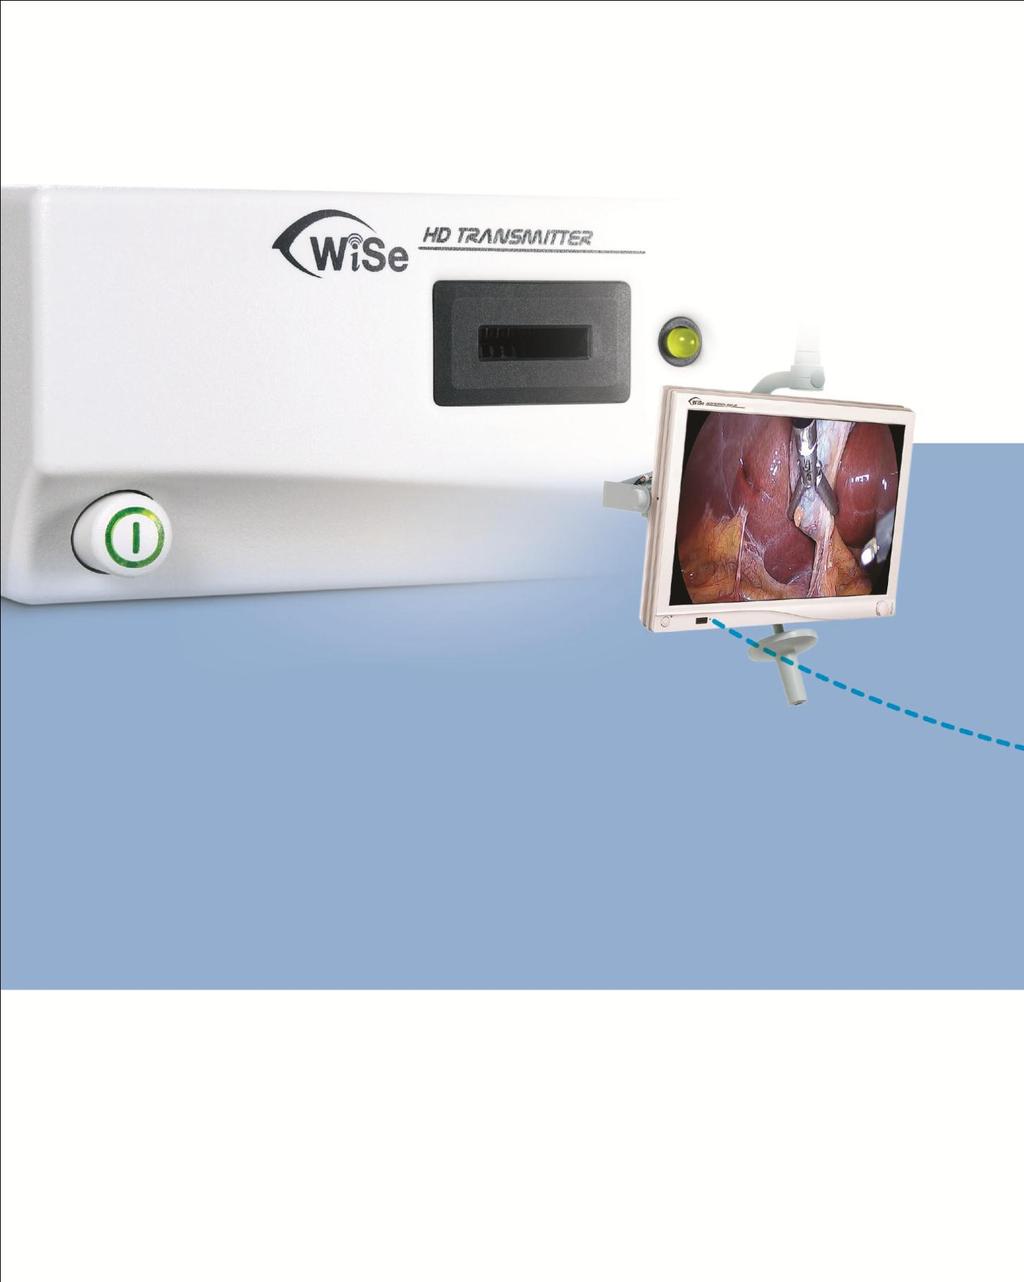 Tecnologia Sem Fio A Escolha Clara para Visualização HD Visor cirúrgico WiSe HDTV A Stryker tem como base sua experiência de visualização com o Monitor de Tela Plana WiSe HDTV, a primeira tela plana